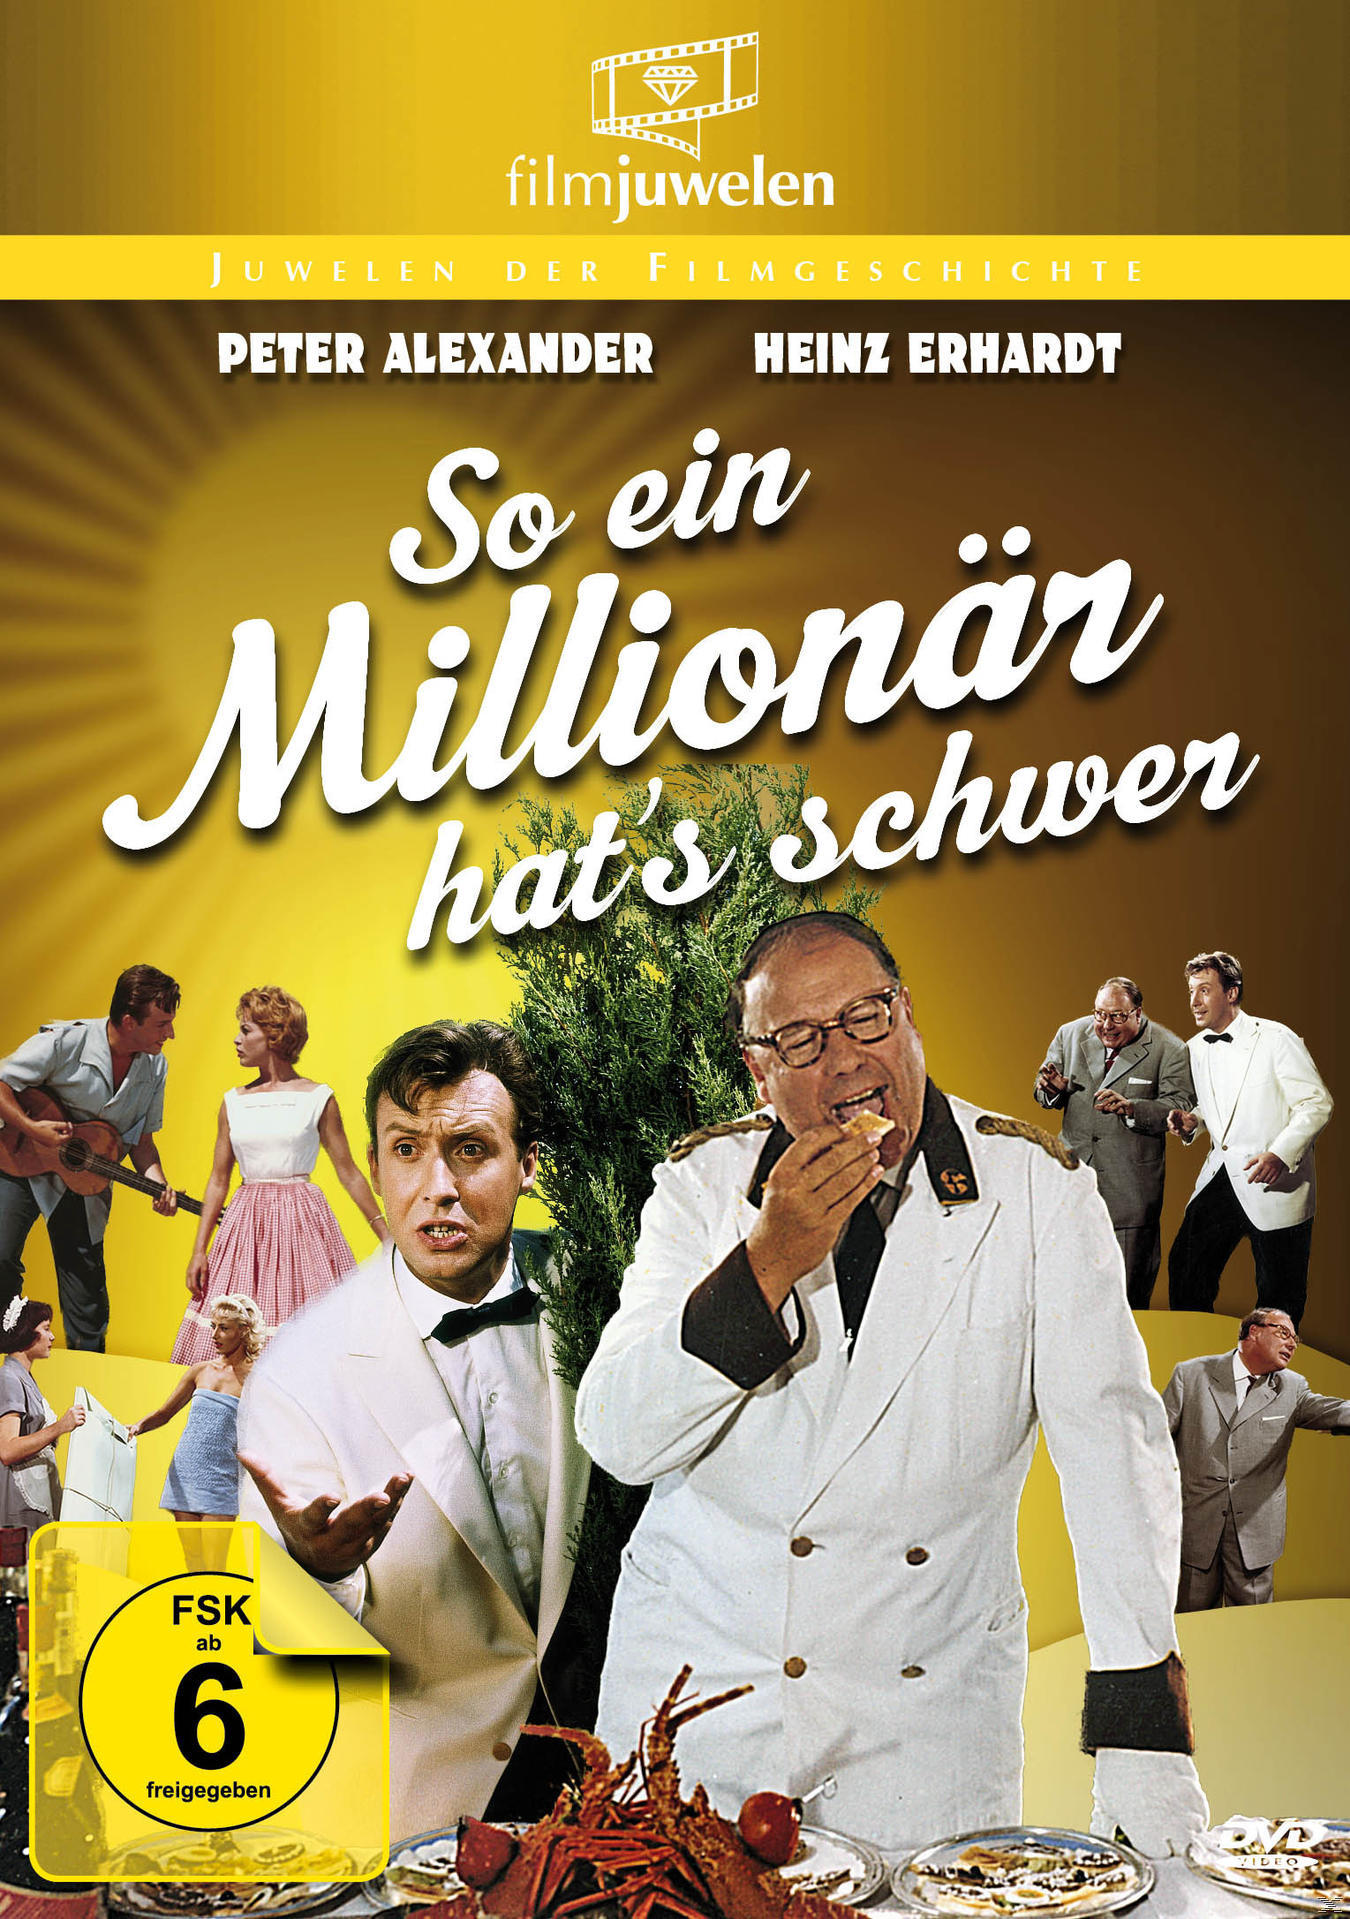 Heinz Erhardt schwer DVD Millionär So - ein hat’s